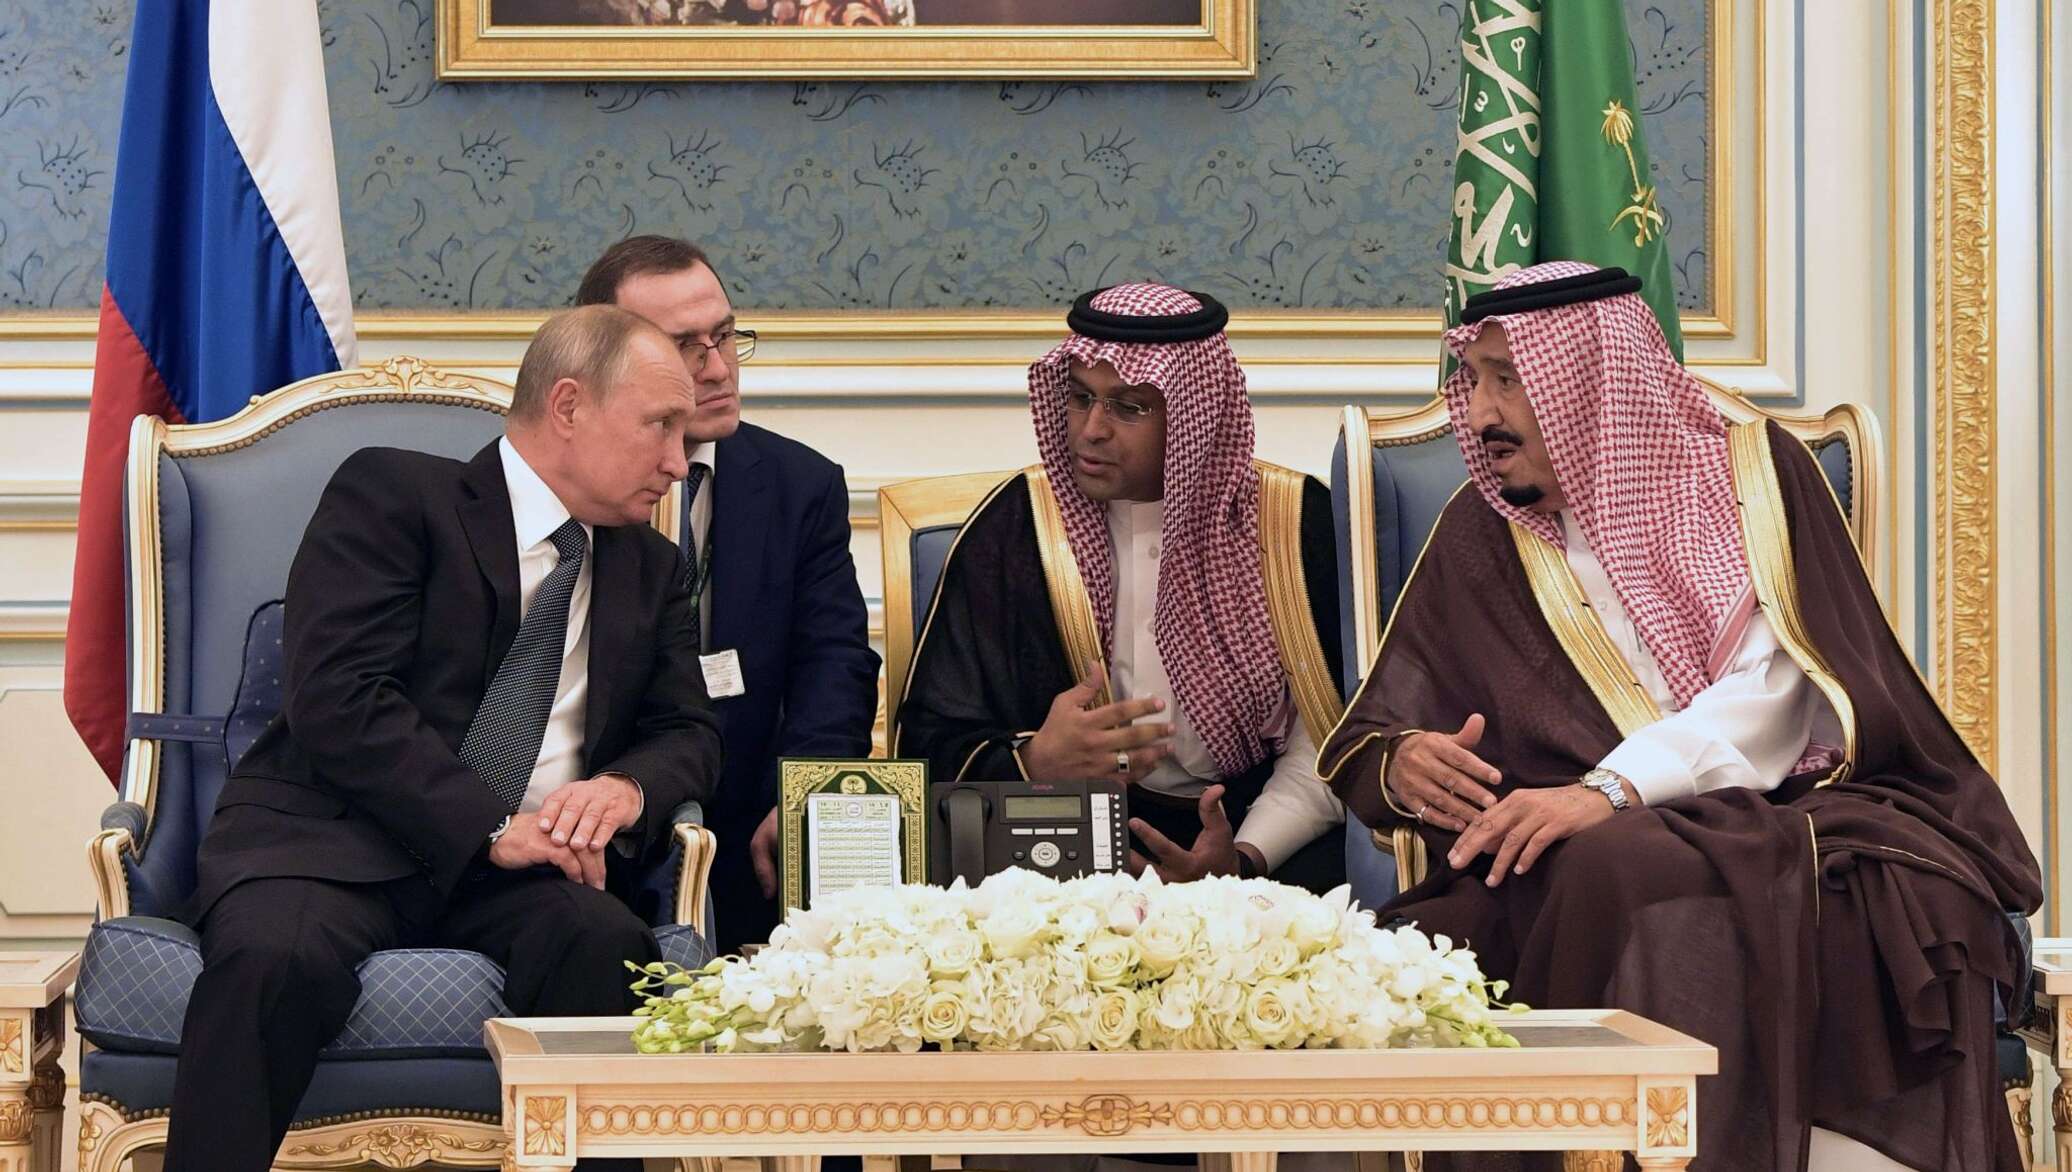 Рф саудовская аравия. Визит короля Саудовской Аравии. Принц Абдель Азиз Бен Сальман Аль Сауд.